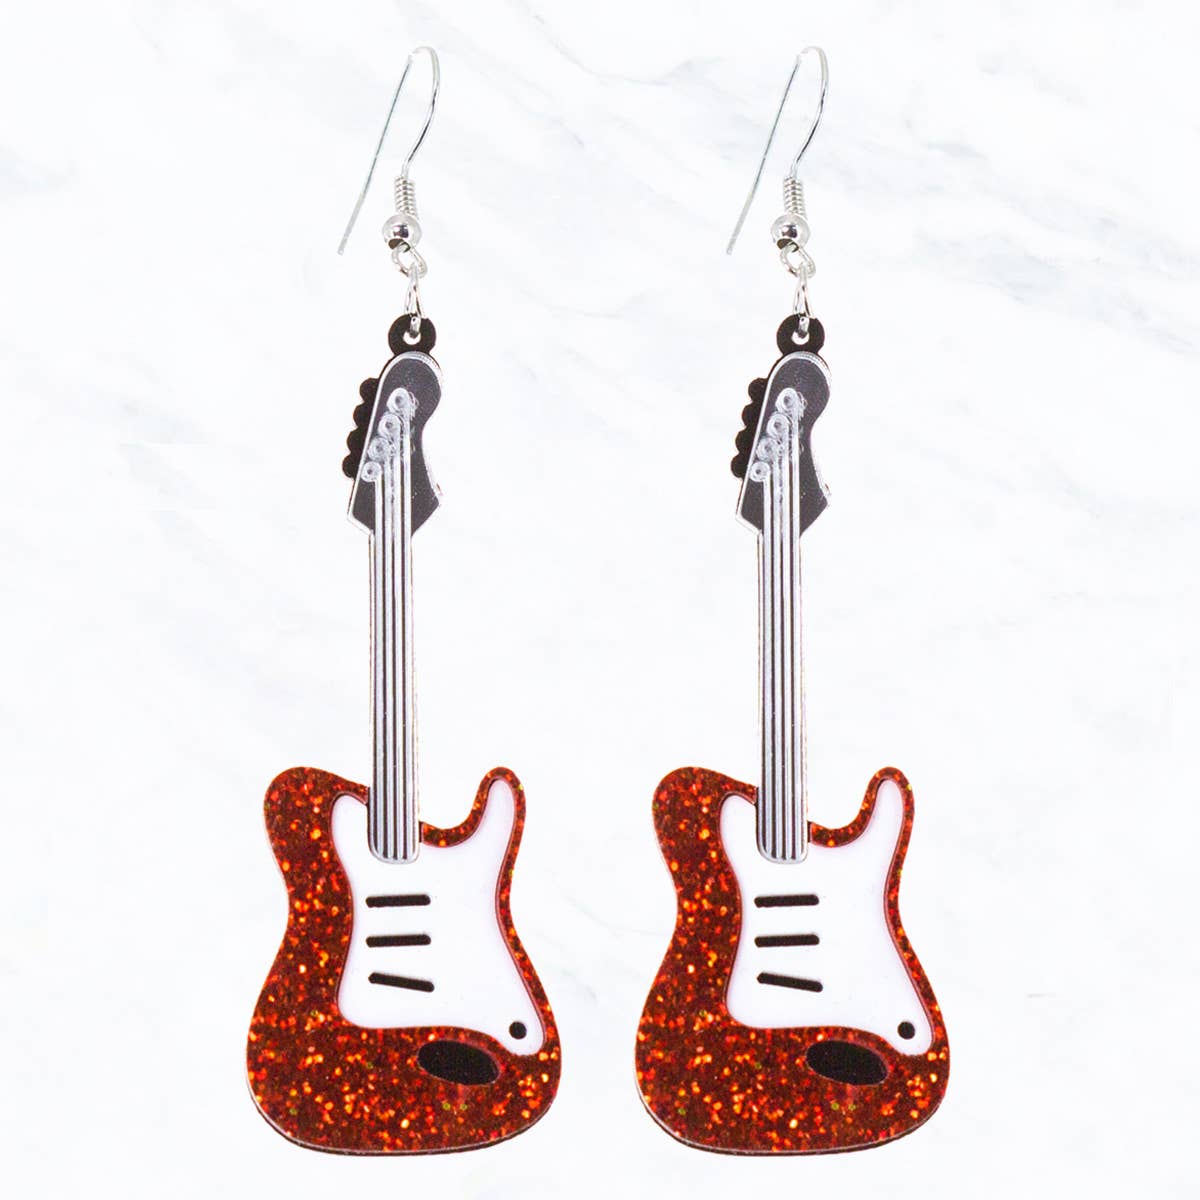 Glitter Electric Guitar Earrings